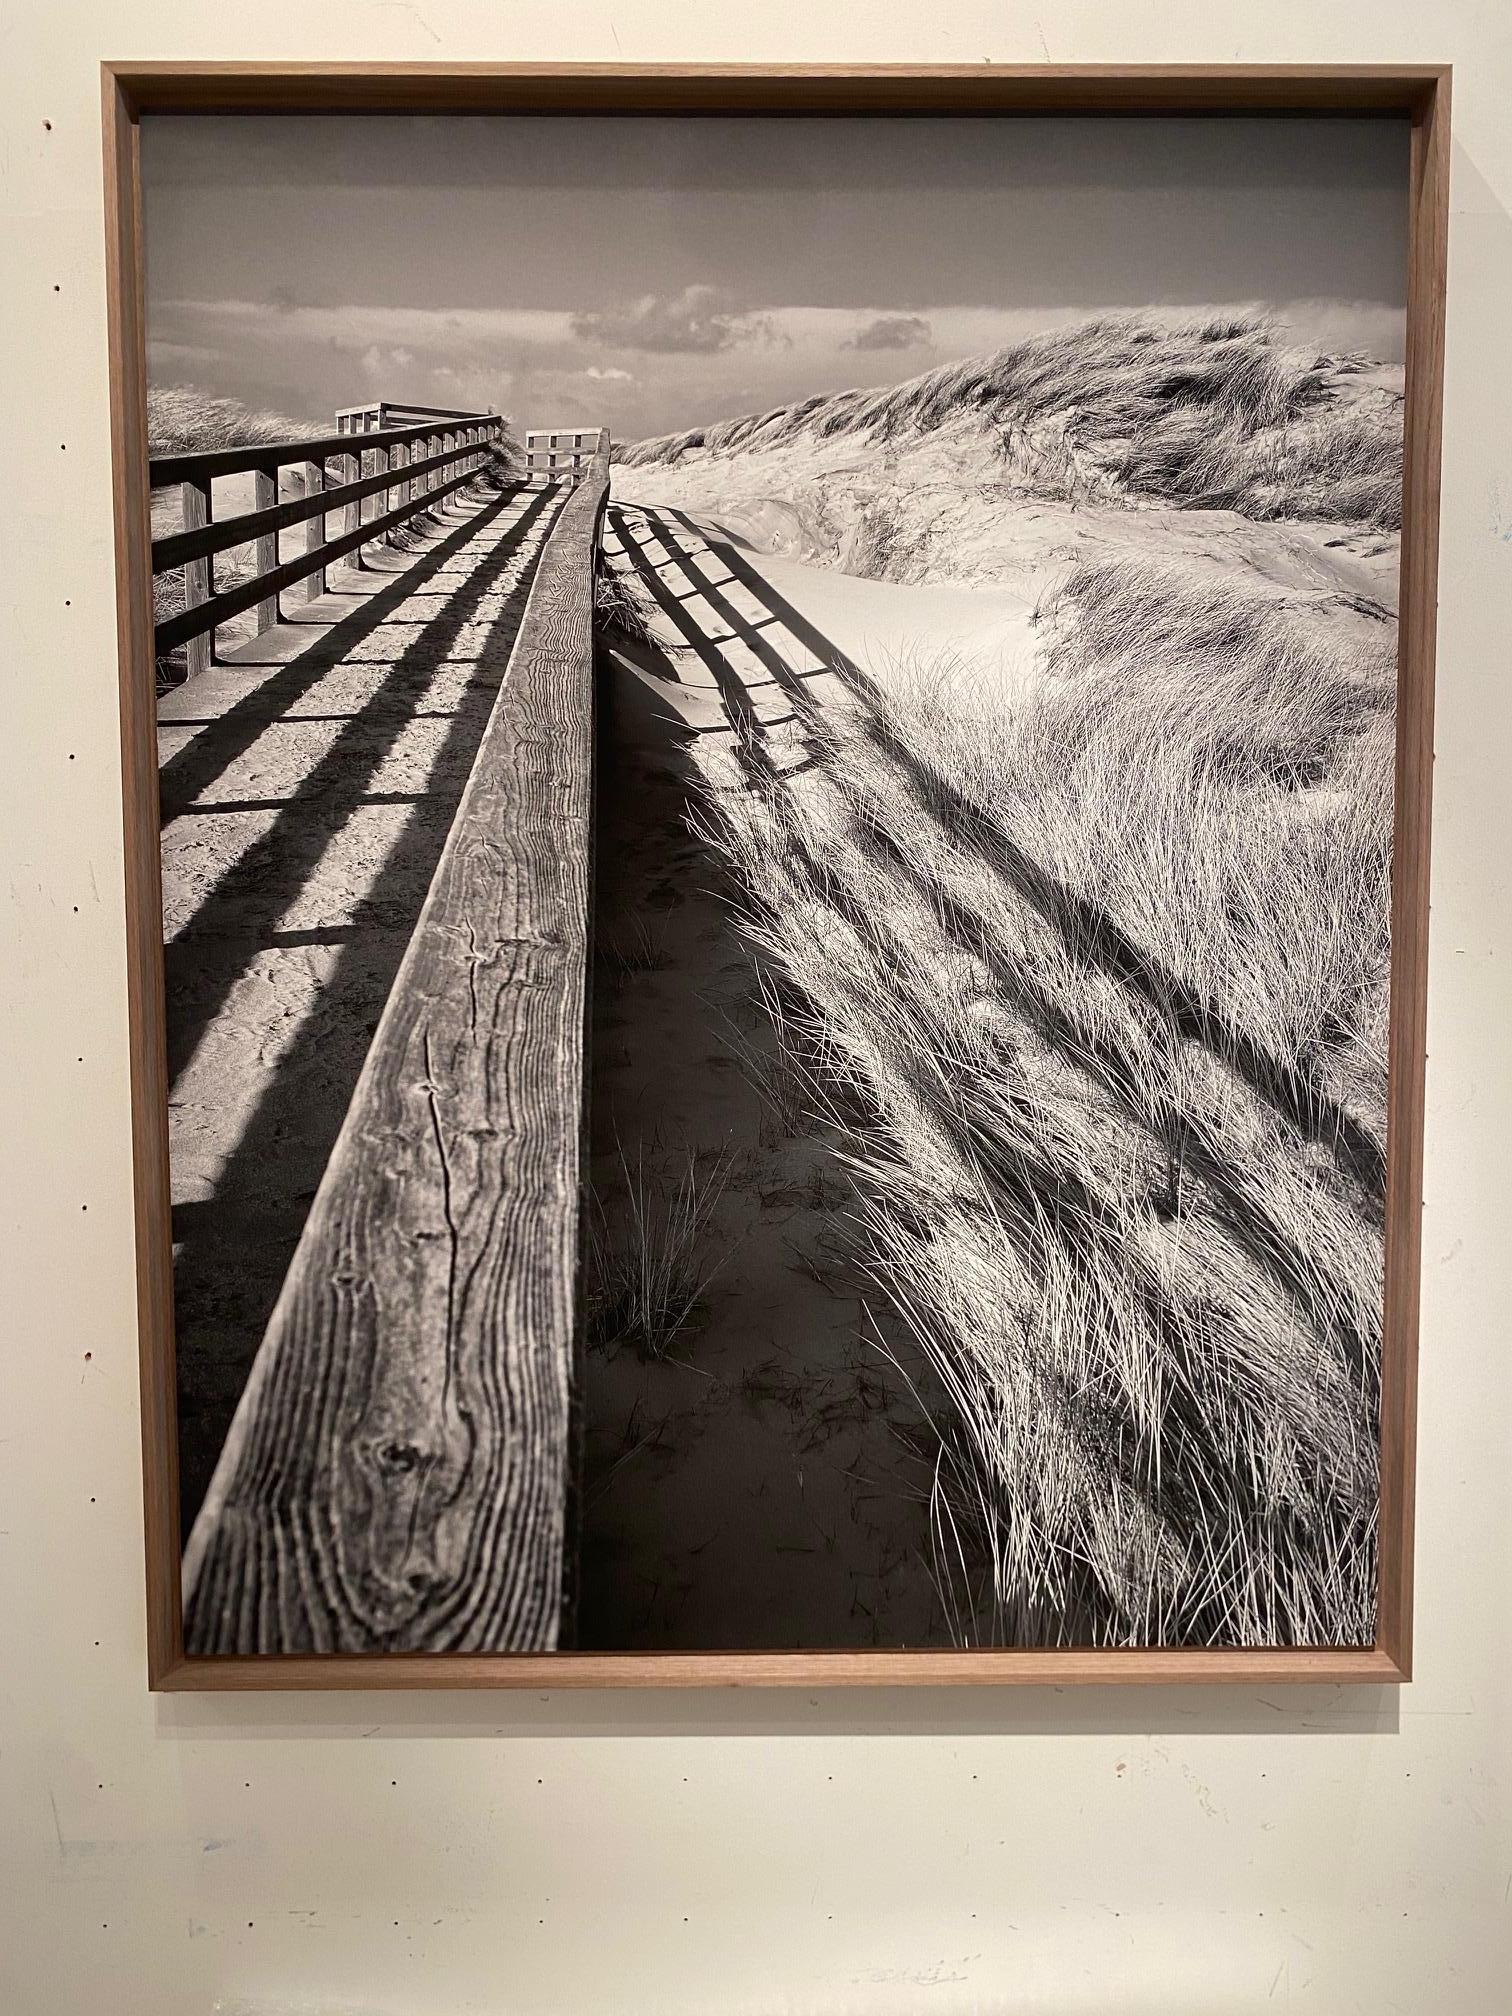 The Way to the Beach (Le chemin de la plage) - photographie de paysage contemporaine, plage, noir et blanc - Photograph de Michael Götze